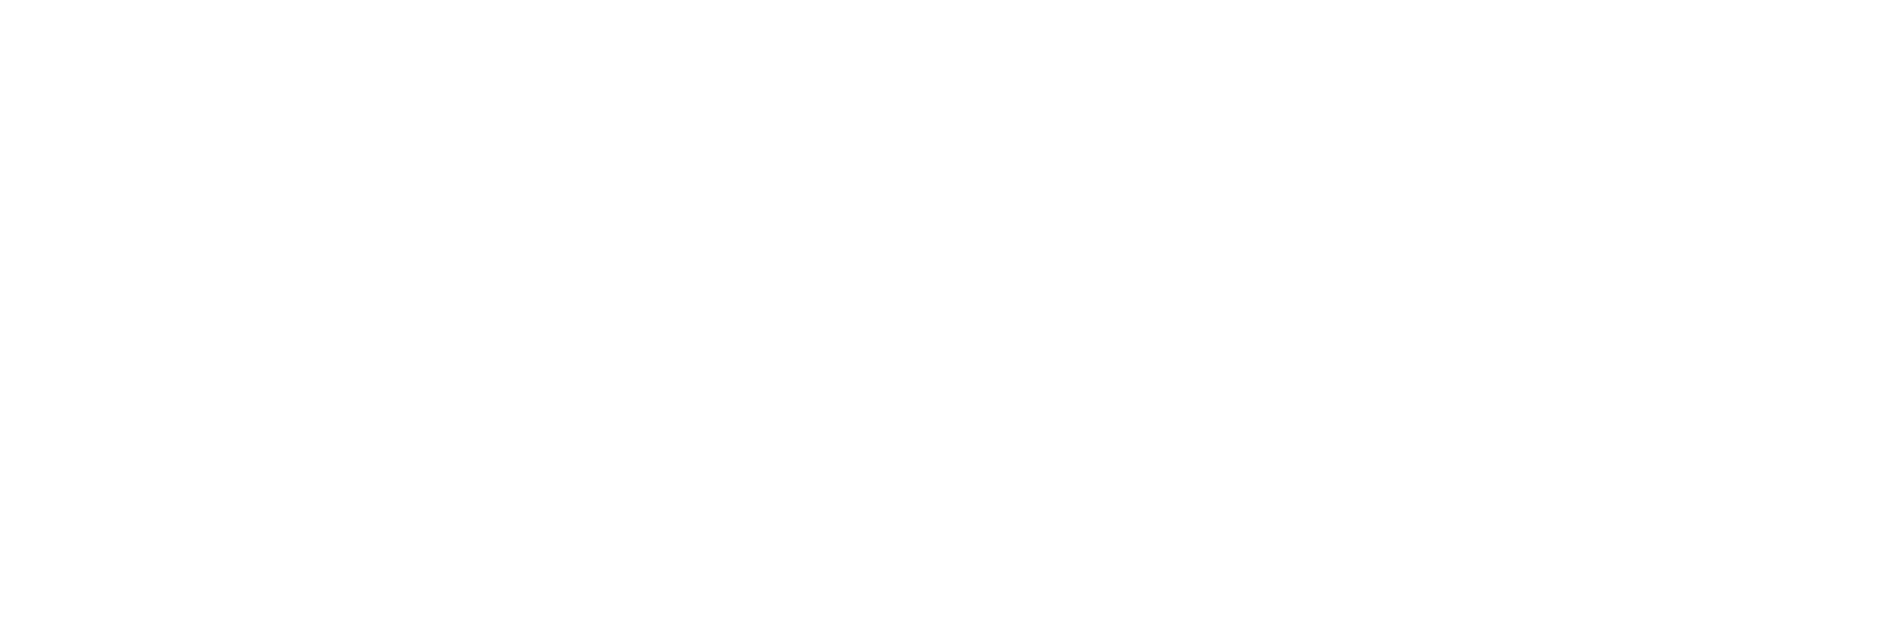 Modest! Golf Management